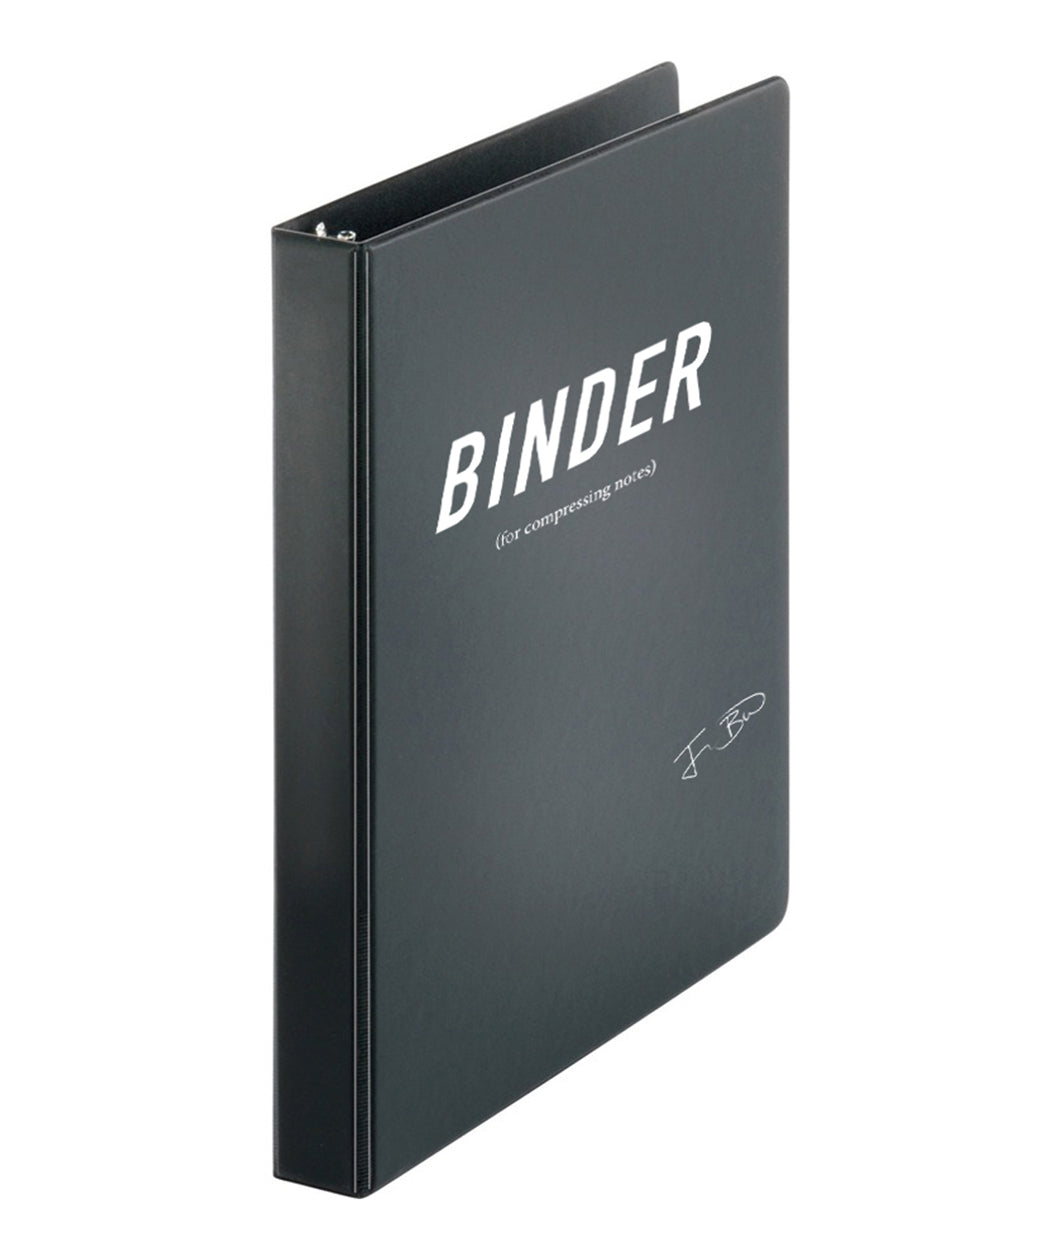 Binder (For Compressing Notes)